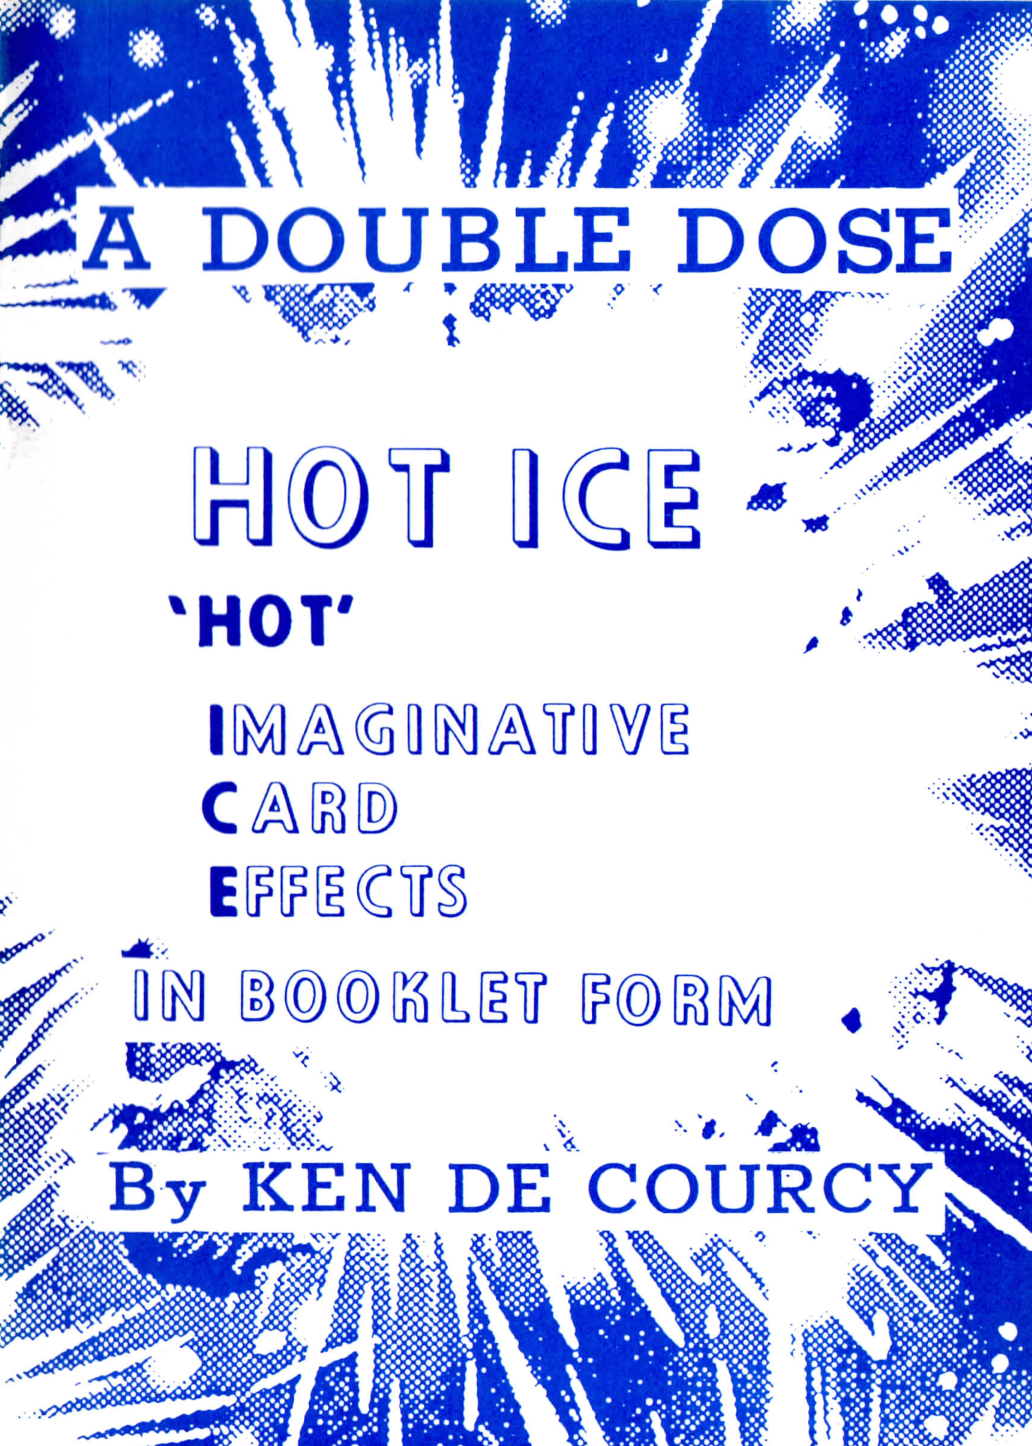 Ken de Courcy - Hot Ice 1